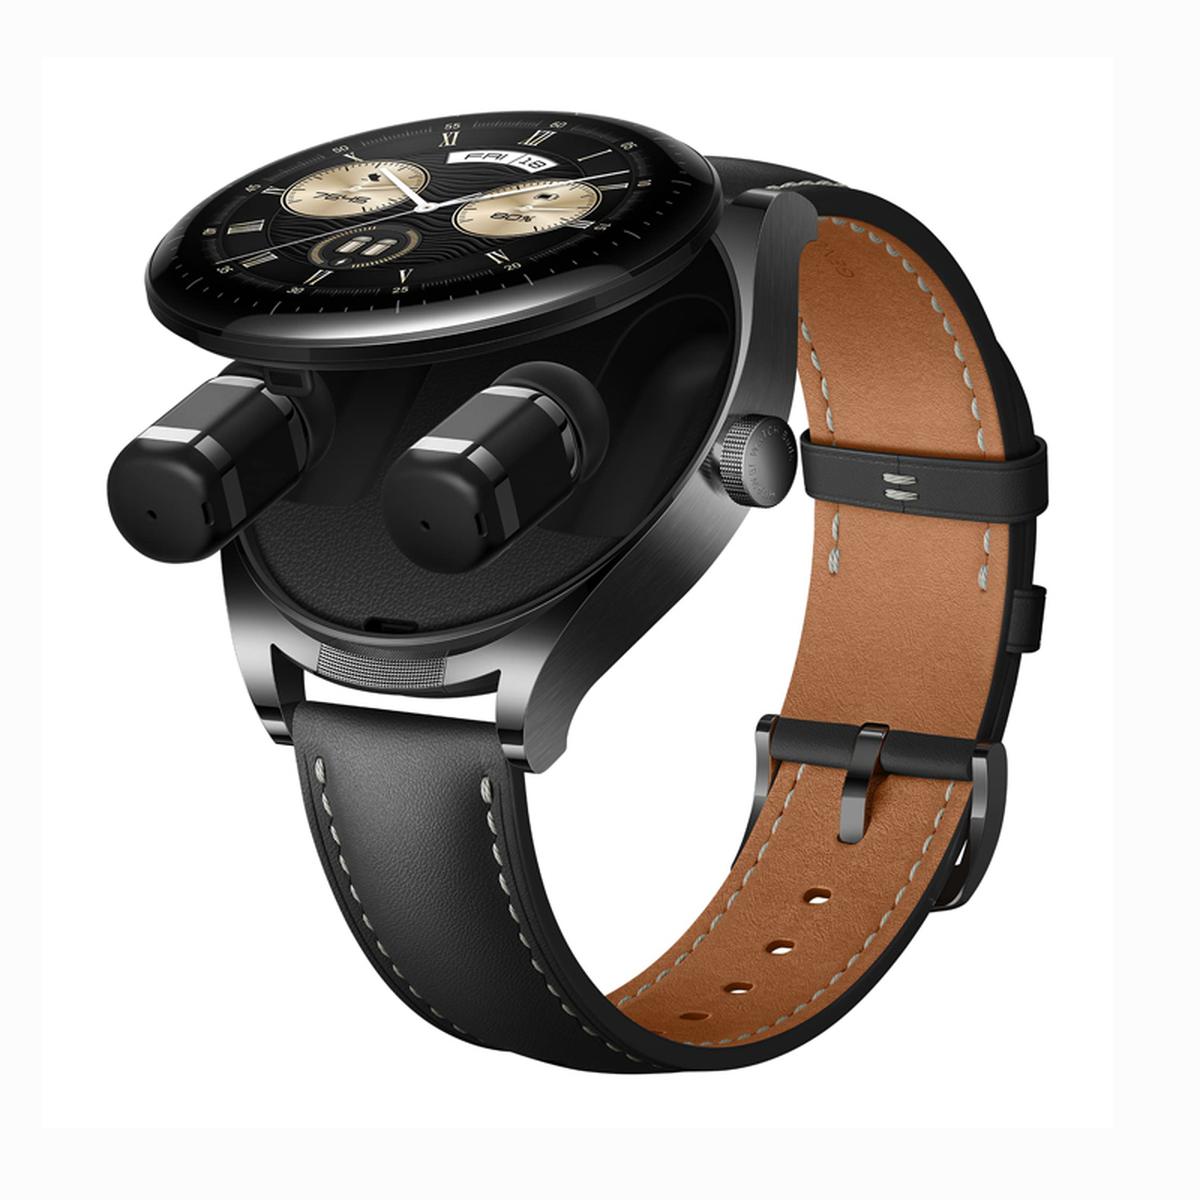 Nuevos Huawei Watch 4 y Watch 4 Pro, características, precio y ficha técnica